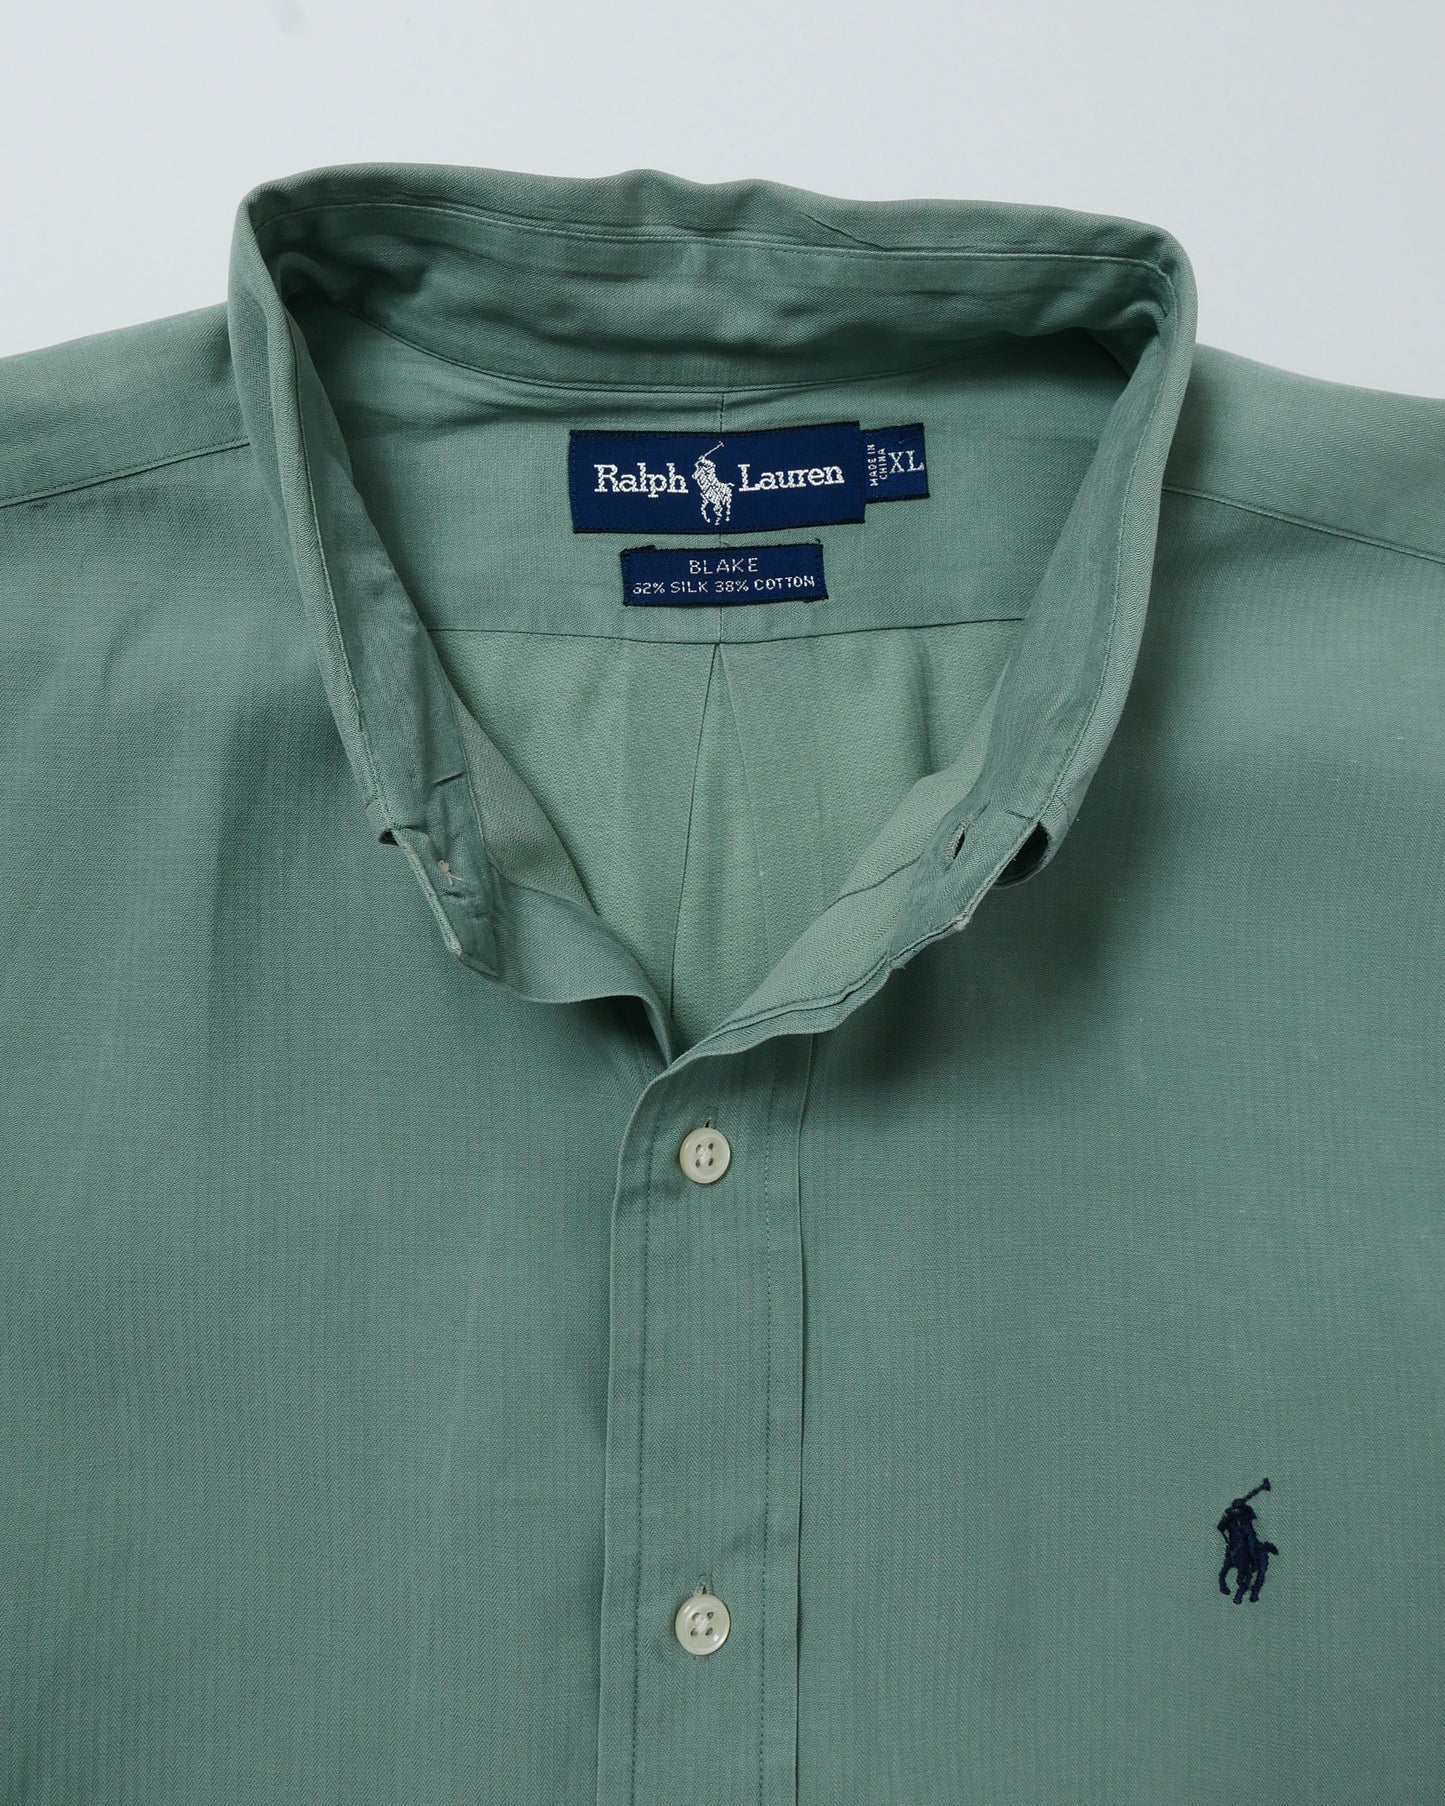 RALPH LAUREN / 90's Silk Cotton L/S Shirt "BLAKE" -XL-